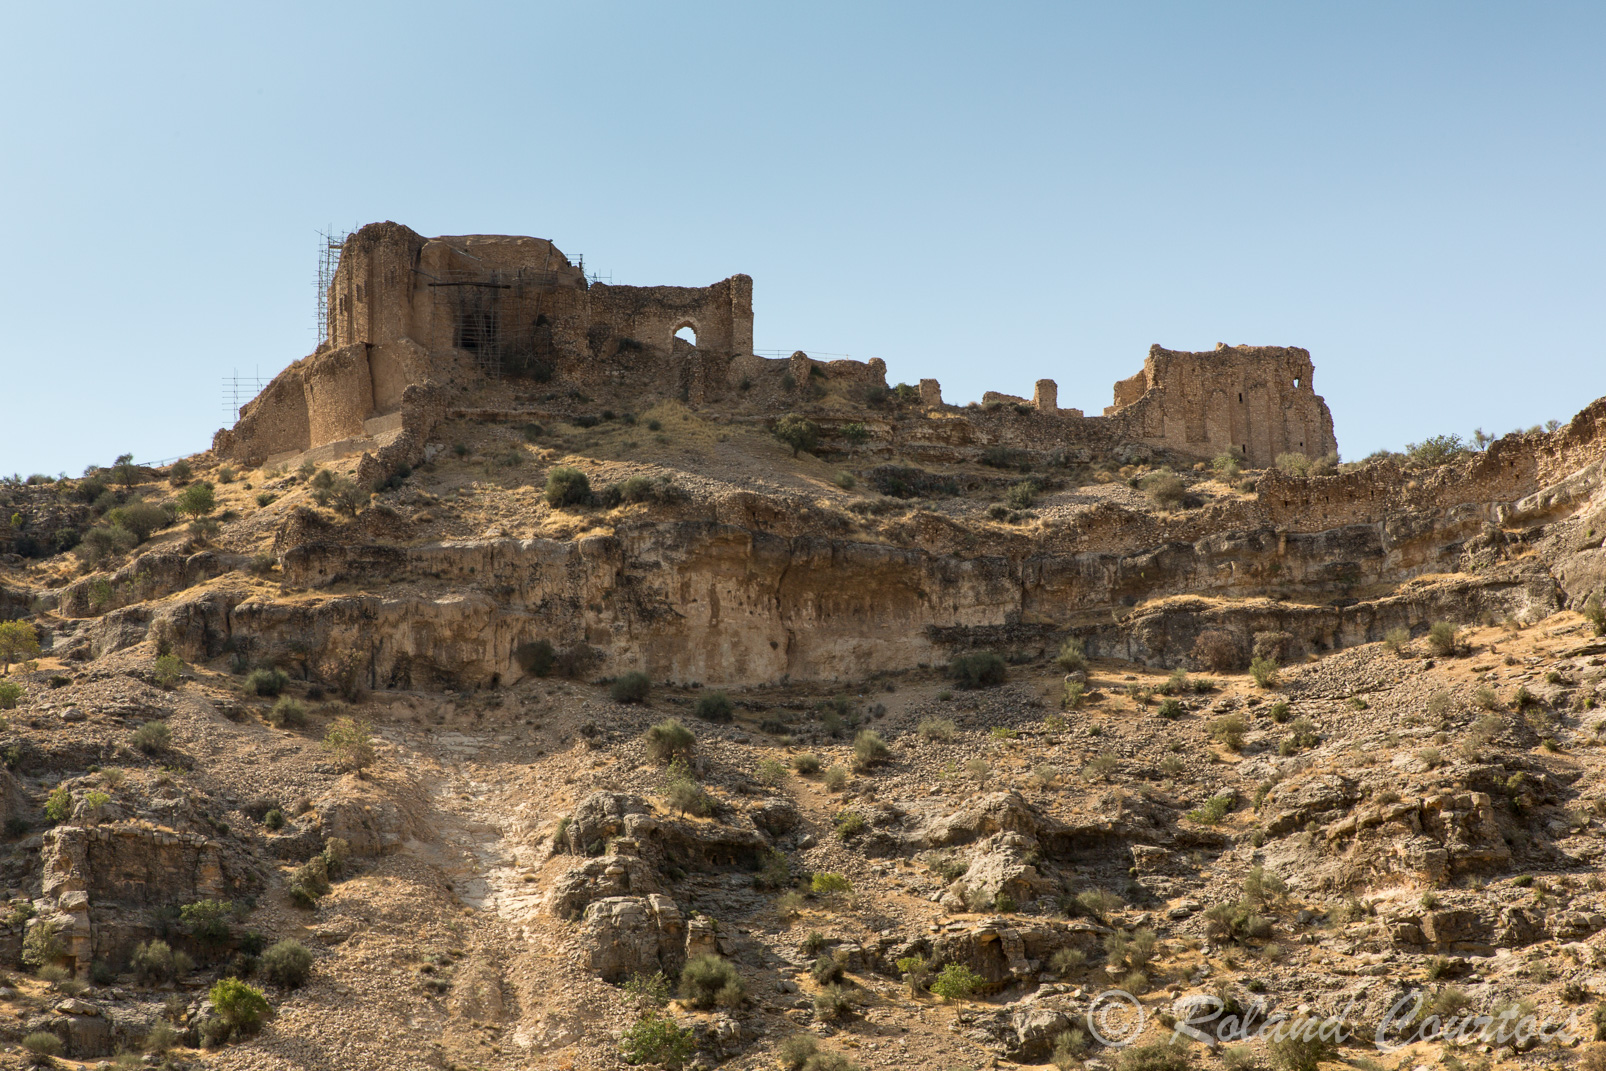 Une gorge impressionnante est dominée par les fortifications d’un château sassanide, le Qala-ye Dokhtar (Château de la Fille), attribué à Ardéshir Ier.